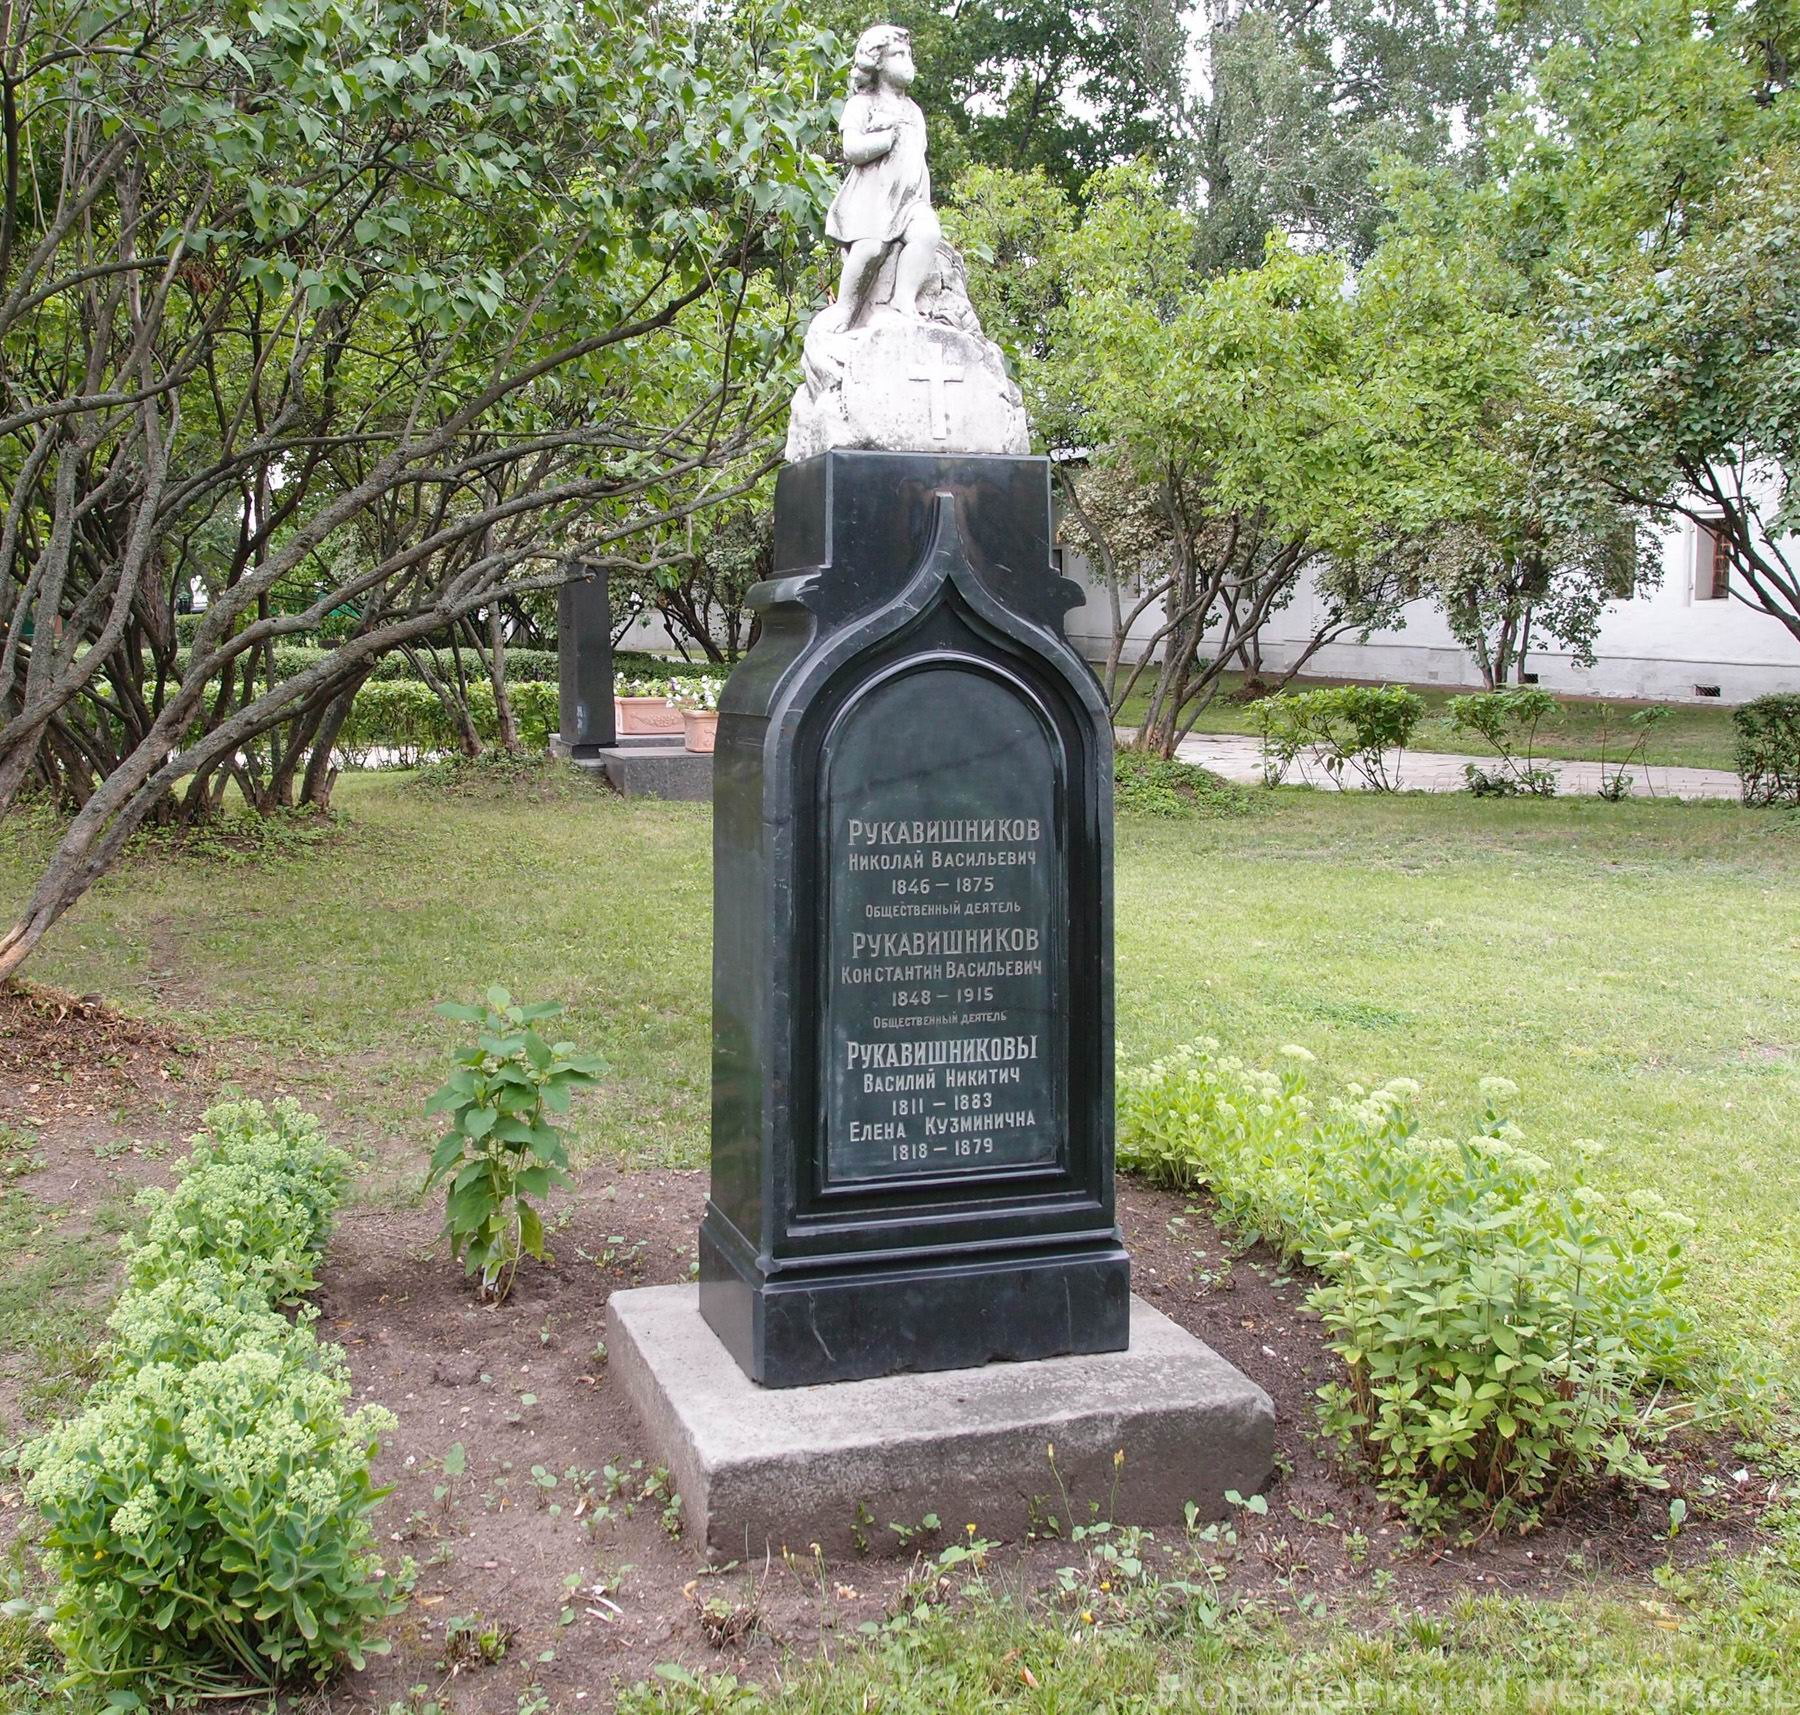 Памятник на могиле Рукавишниковых Н.В. (1845-1875) и К.В. (1848-1915), в Новодевичьем монастыре. Нажмите левую кнопку мыши, чтобы увидеть фрагмент памятника.